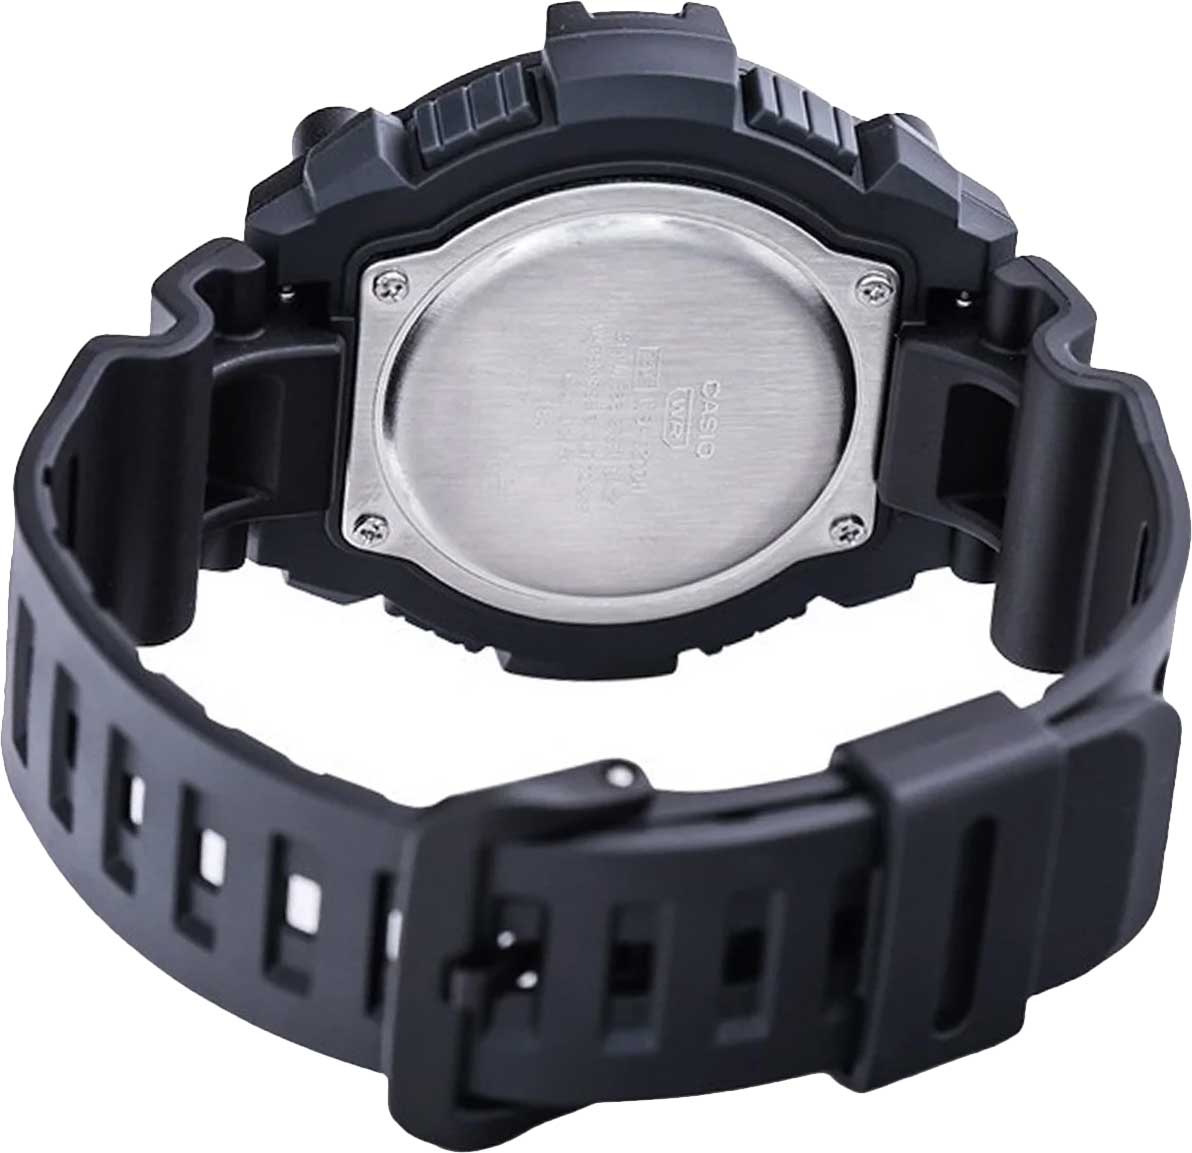 Наручные часы Casio Collection WS-1300H-1AVEF AllTime.ru фото, описание по купить в лучшей интернет-магазине характеристики, — цене